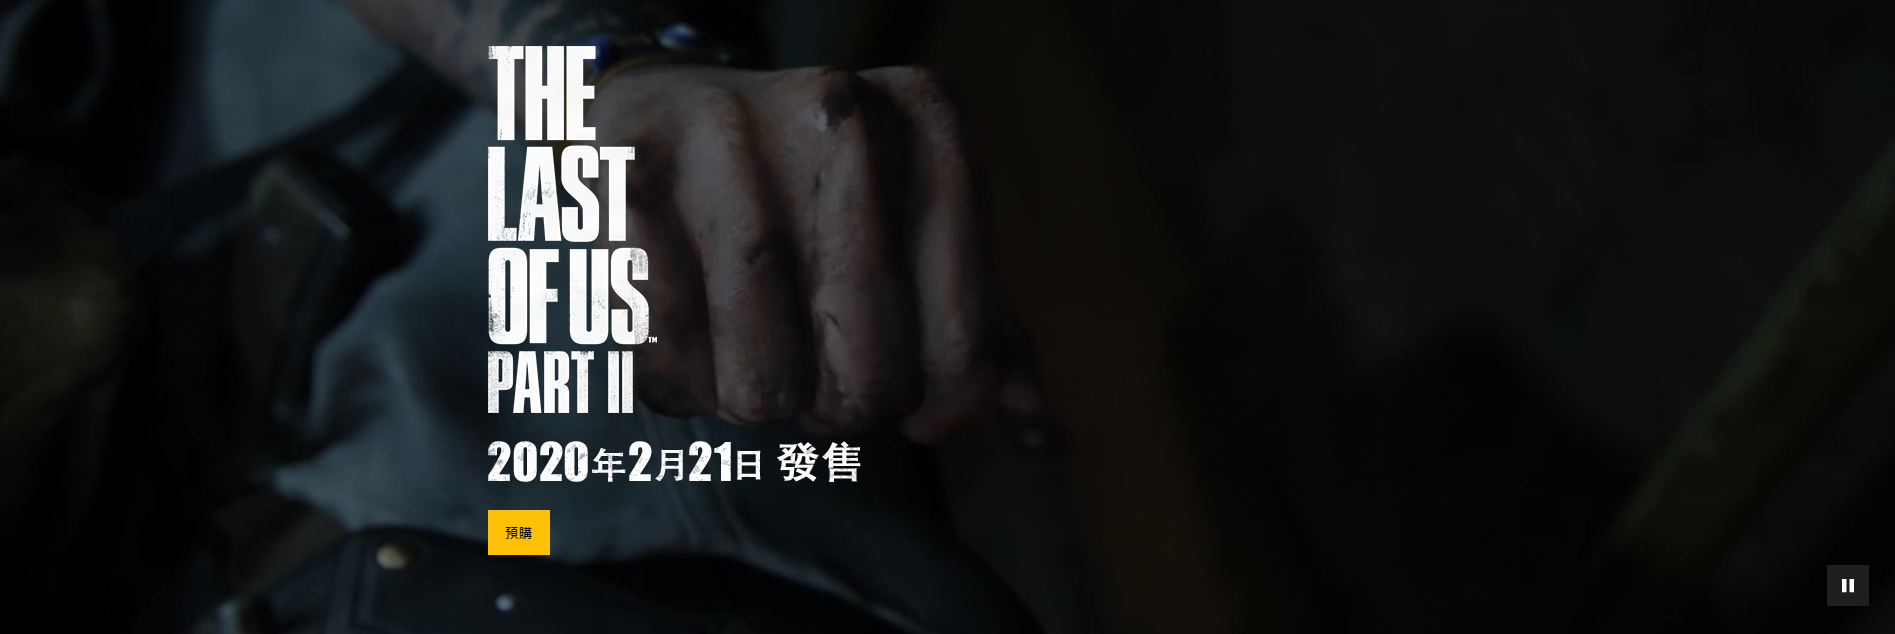 《最后生还者2》中文专题网站上线 欣赏31张高清截图